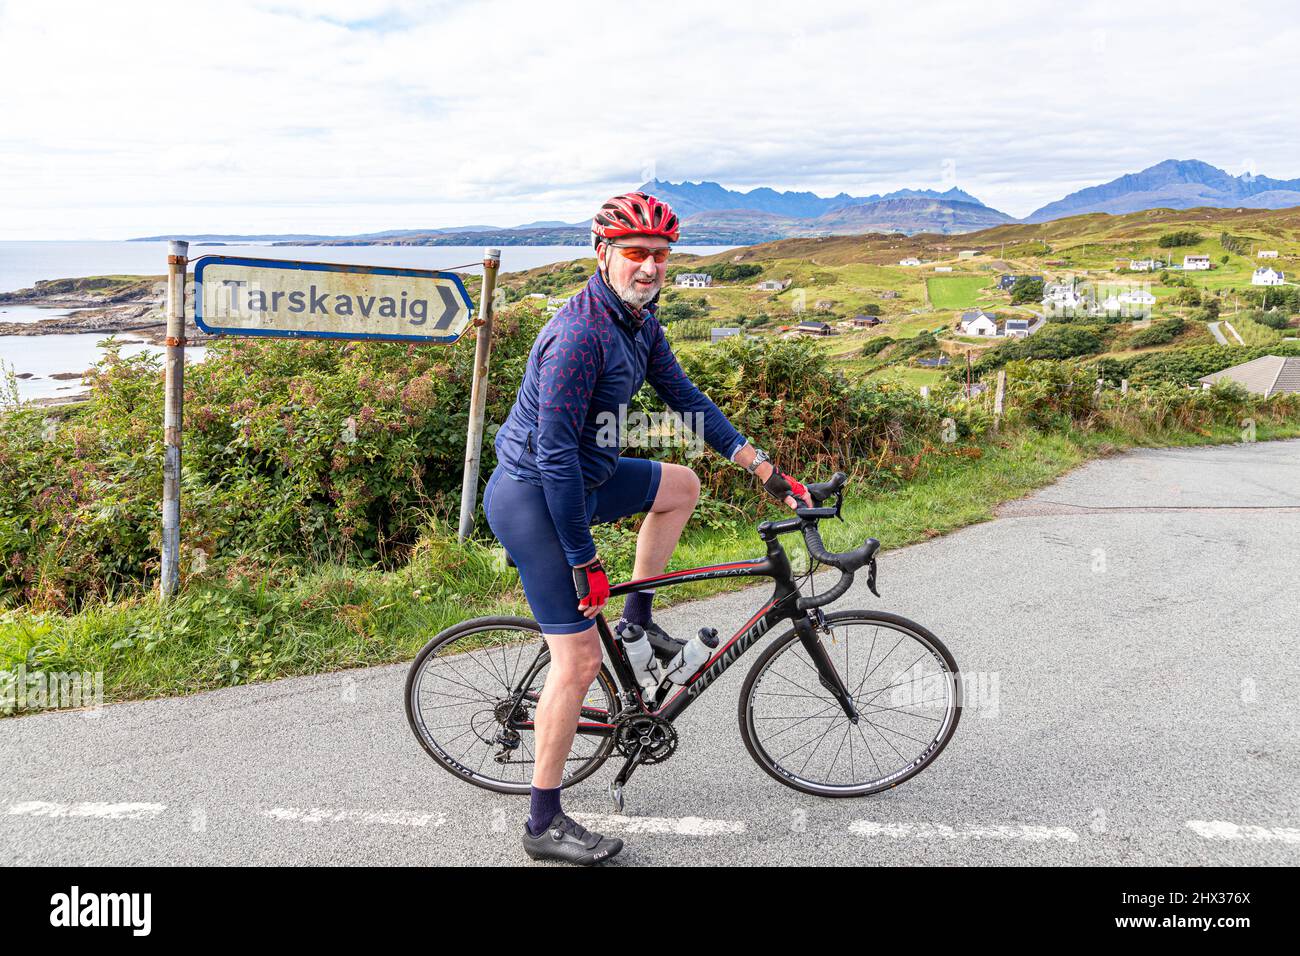 Ein Radfahrer im Dorf Tarskavaig in der Tarskavaig Bay auf dem Sleat Penisula im Süden der Isle of Skye, Highland, Schottland, Großbritannien. Die Cuillins A Stockfoto